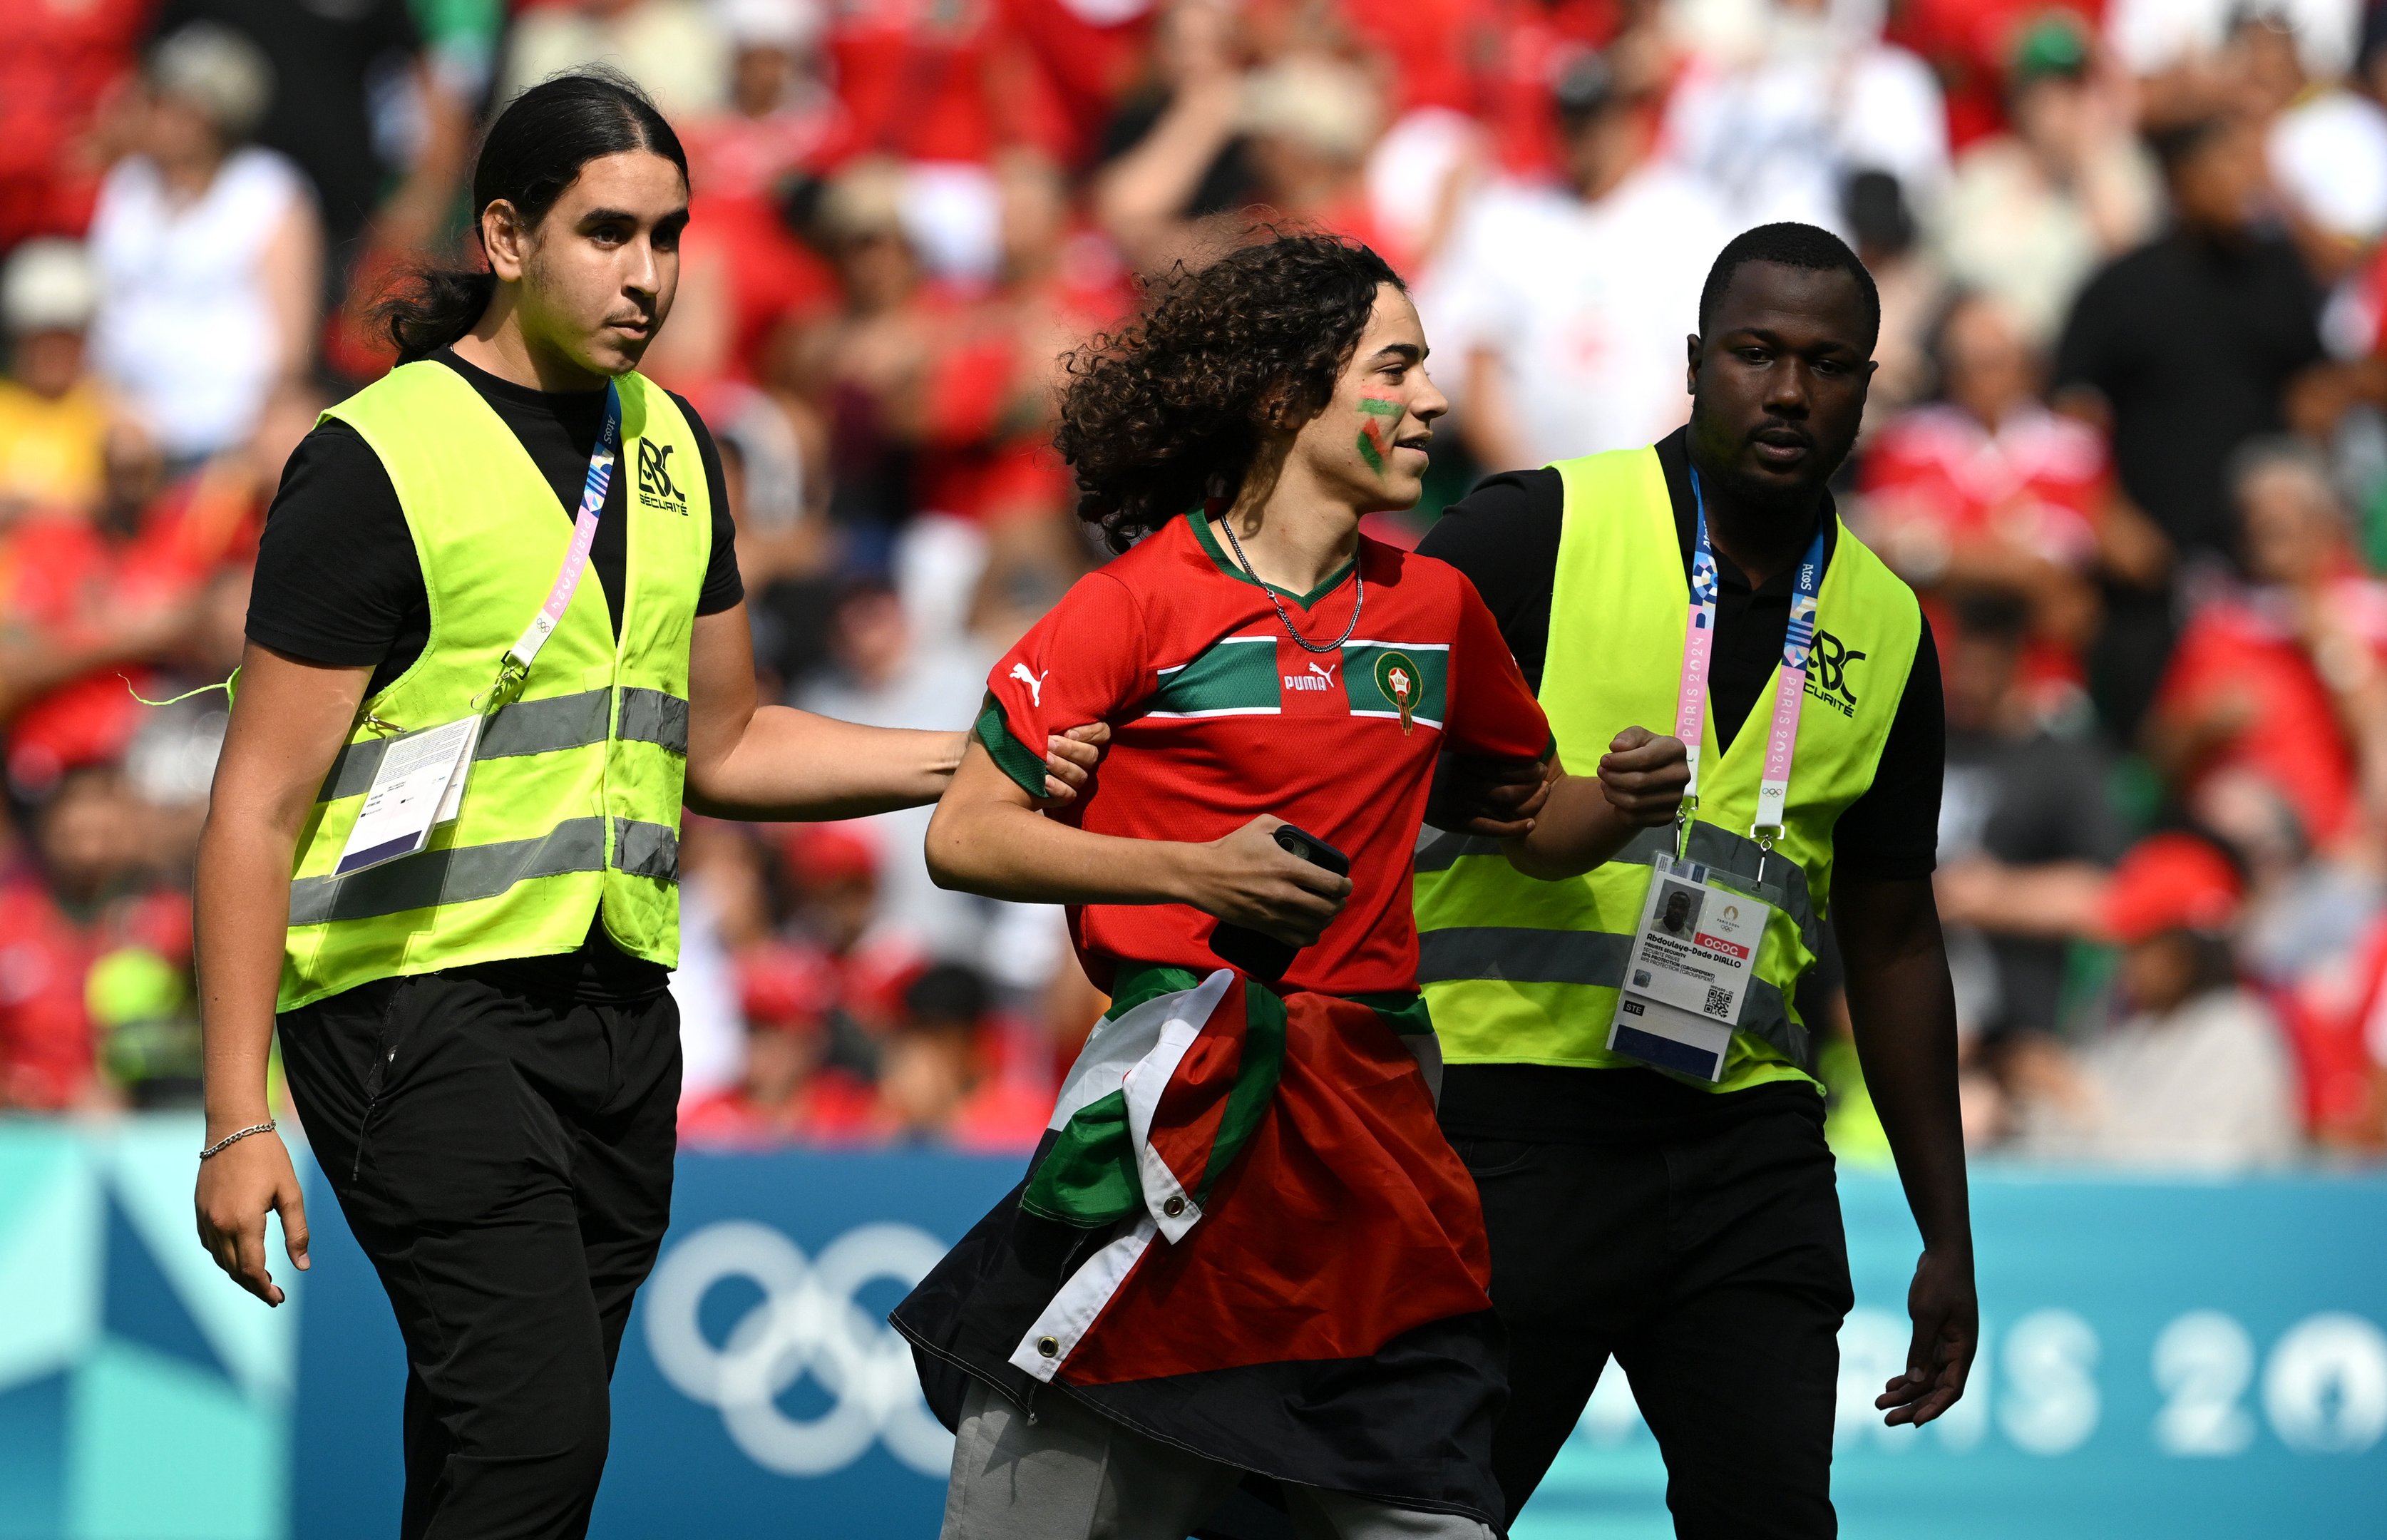 Comissários removem um invasor do campo durante a partida do grupo B masculino entre Argentina e Marrocos durante os Jogos Olímpicos de Paris 2024 no Stade Geoffroy-Guichard em 24 de julho de 2024 em Saint-Etienne, França.